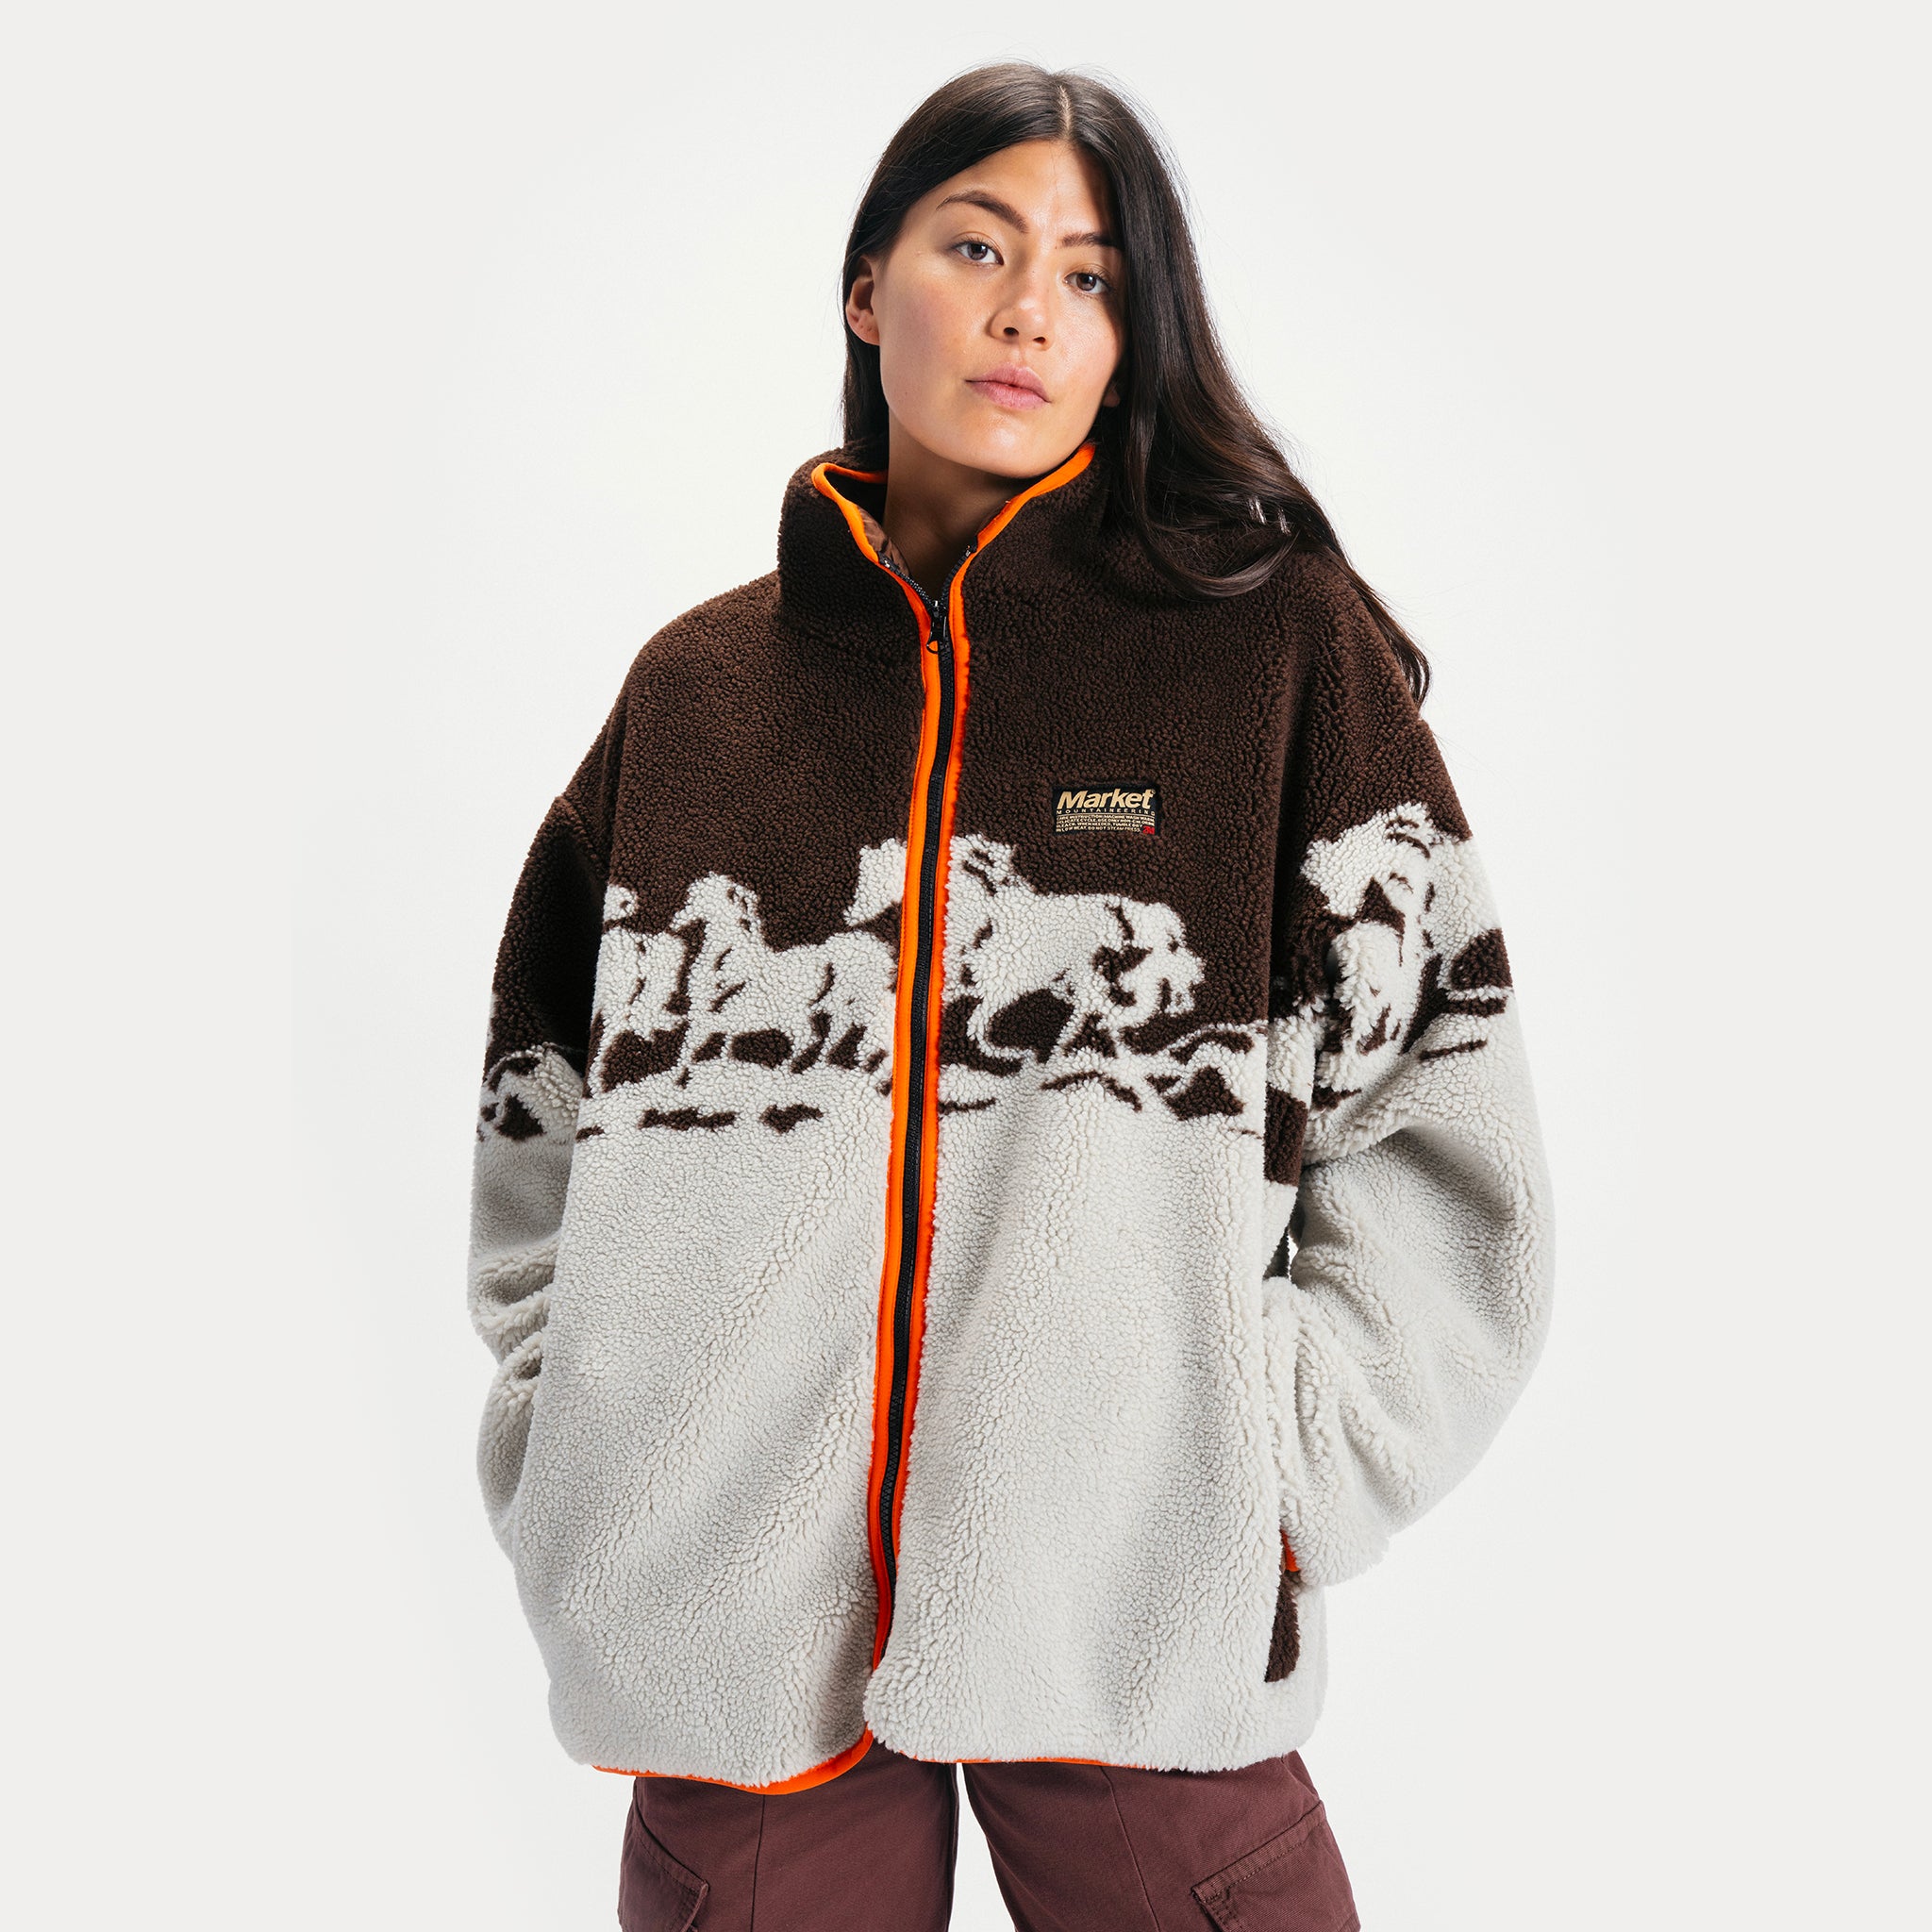 Maxxsel Men's Sherpa Lined Polar Fleece Jacket M1015 – Good's Store Online